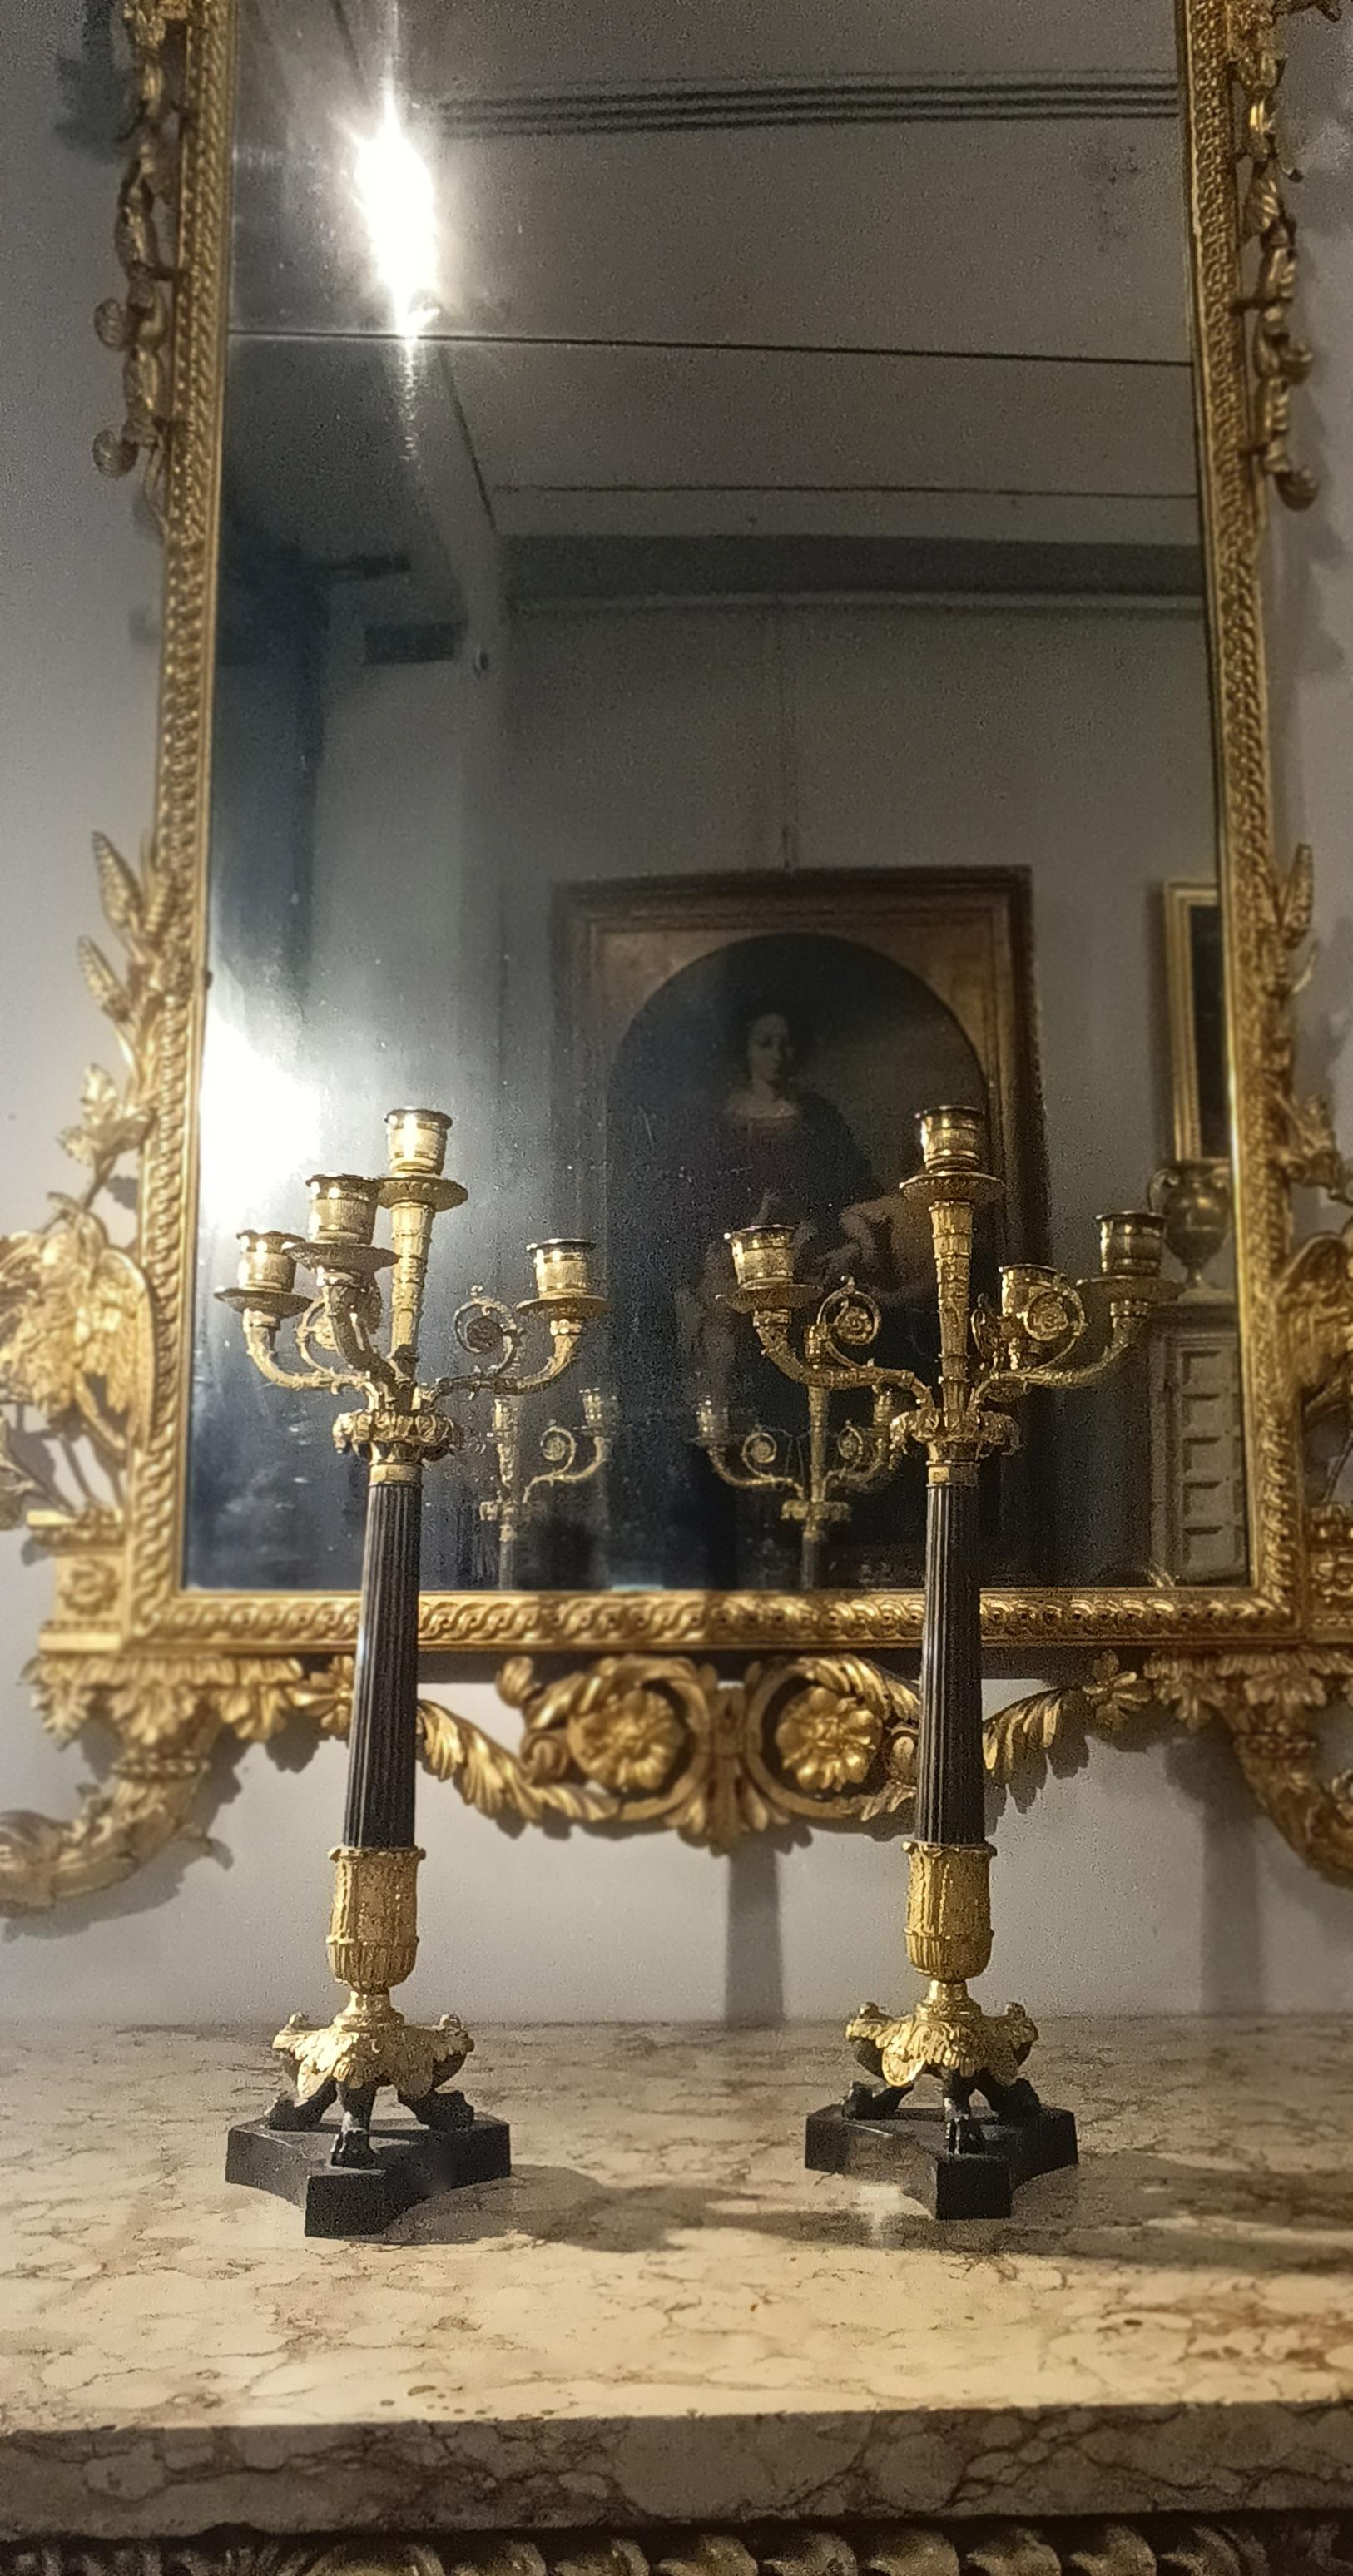 Ein Paar zierlicher Bronzeleuchter aus der Zeit Karls X. Die Leuchter zeichnen sich durch besondere Ausführungen in vergoldeter Bronze und brünierter Bronze aus. Jeder Kandelaber hat drei Arme für die Aufnahme von Kerzen und eine elegante Säule mit